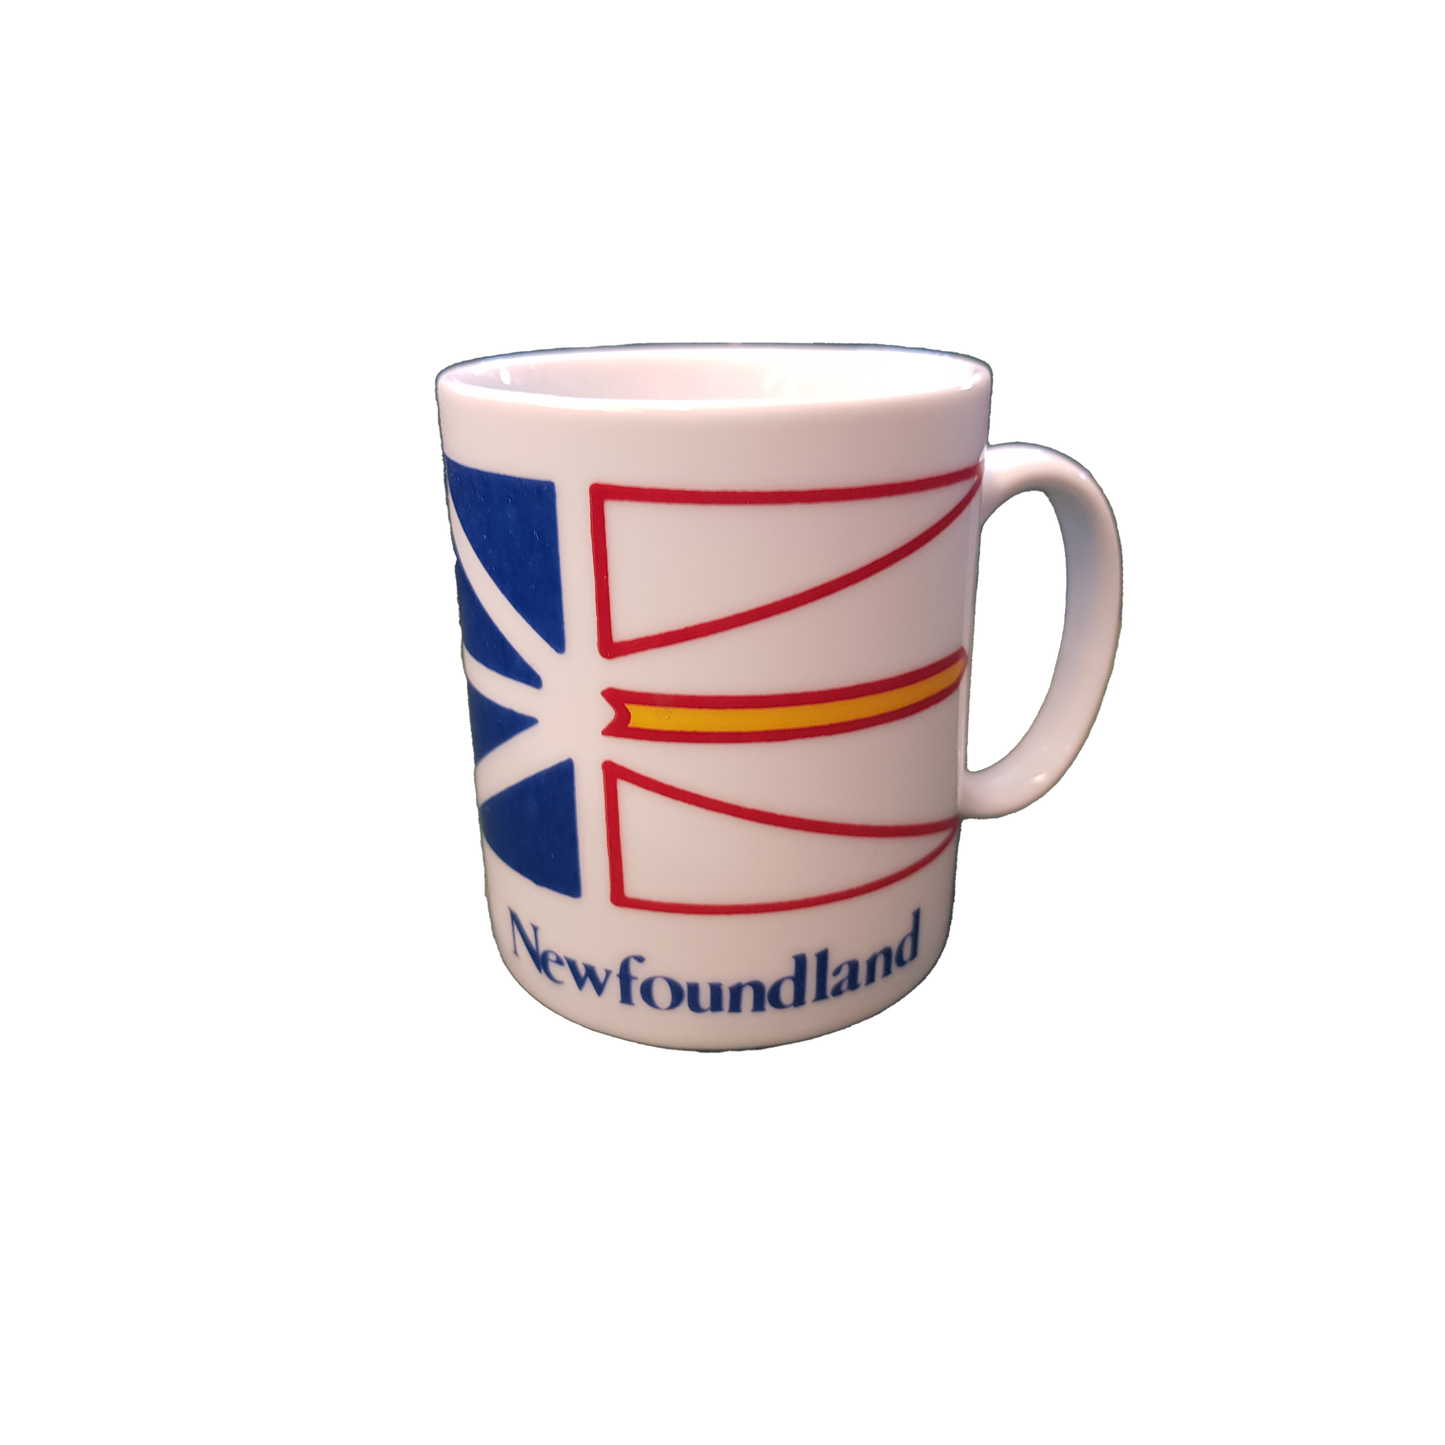 Newfoundland and Labrador Flag Mug